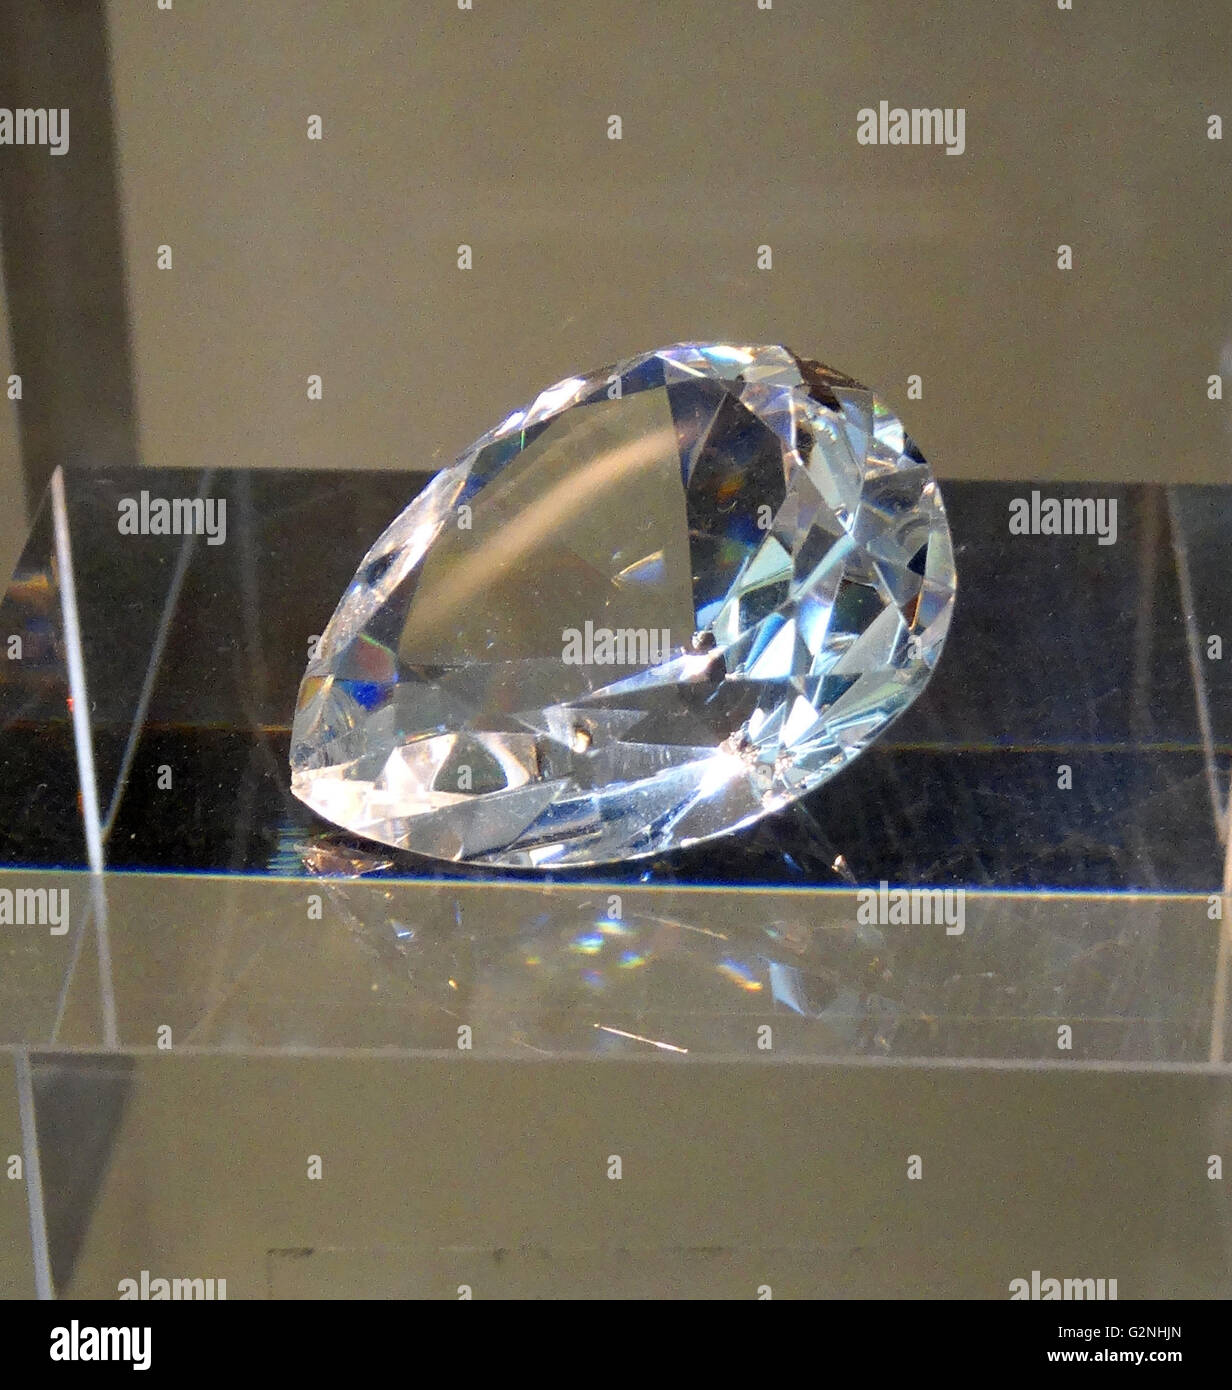 Cullinan V Diamant. Un Diamant Cullinan trouvé en Afrique du Sud et évalués à 18,85 carats. Datée 2014 Banque D'Images